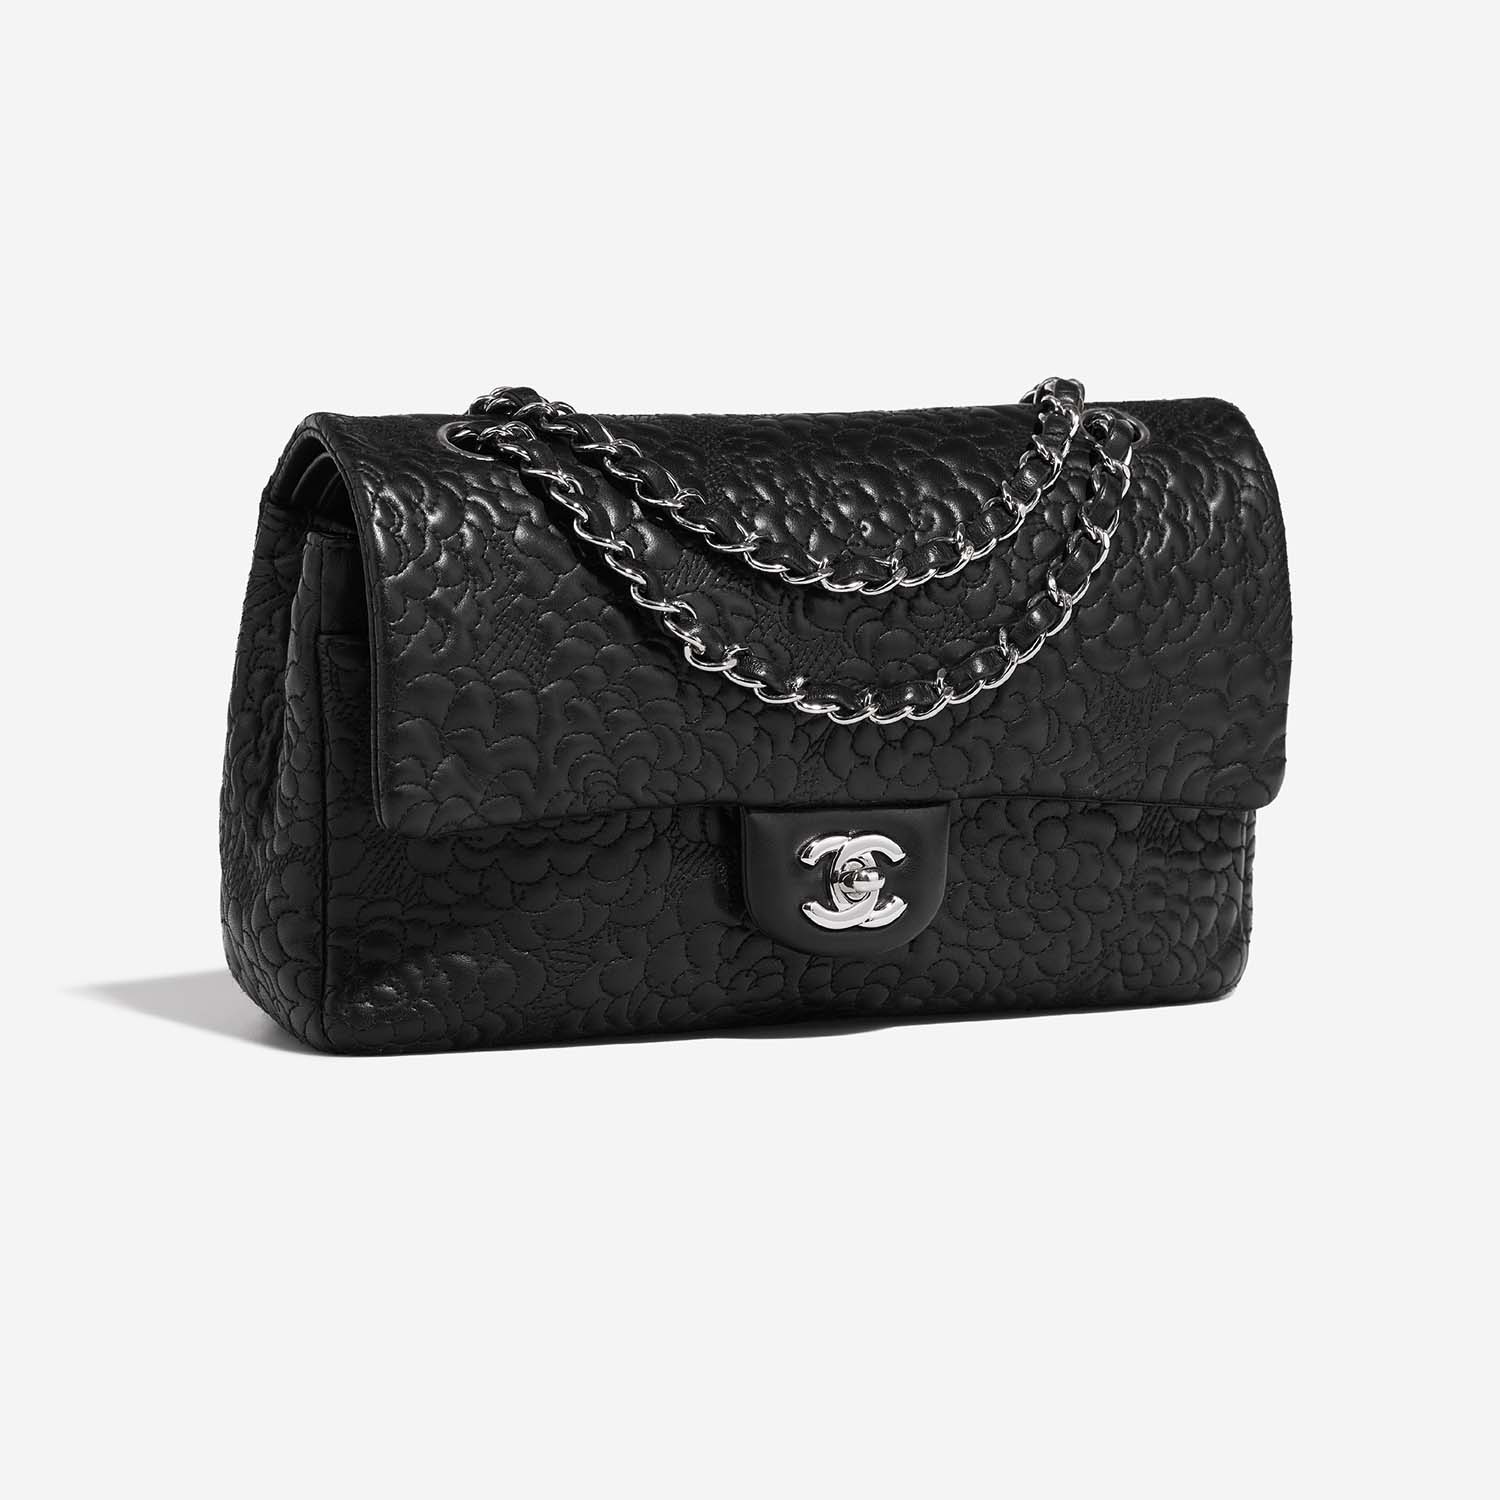 Chanel Timeless Medium Black Side Front | Verkaufen Sie Ihre Designer-Tasche auf Saclab.com